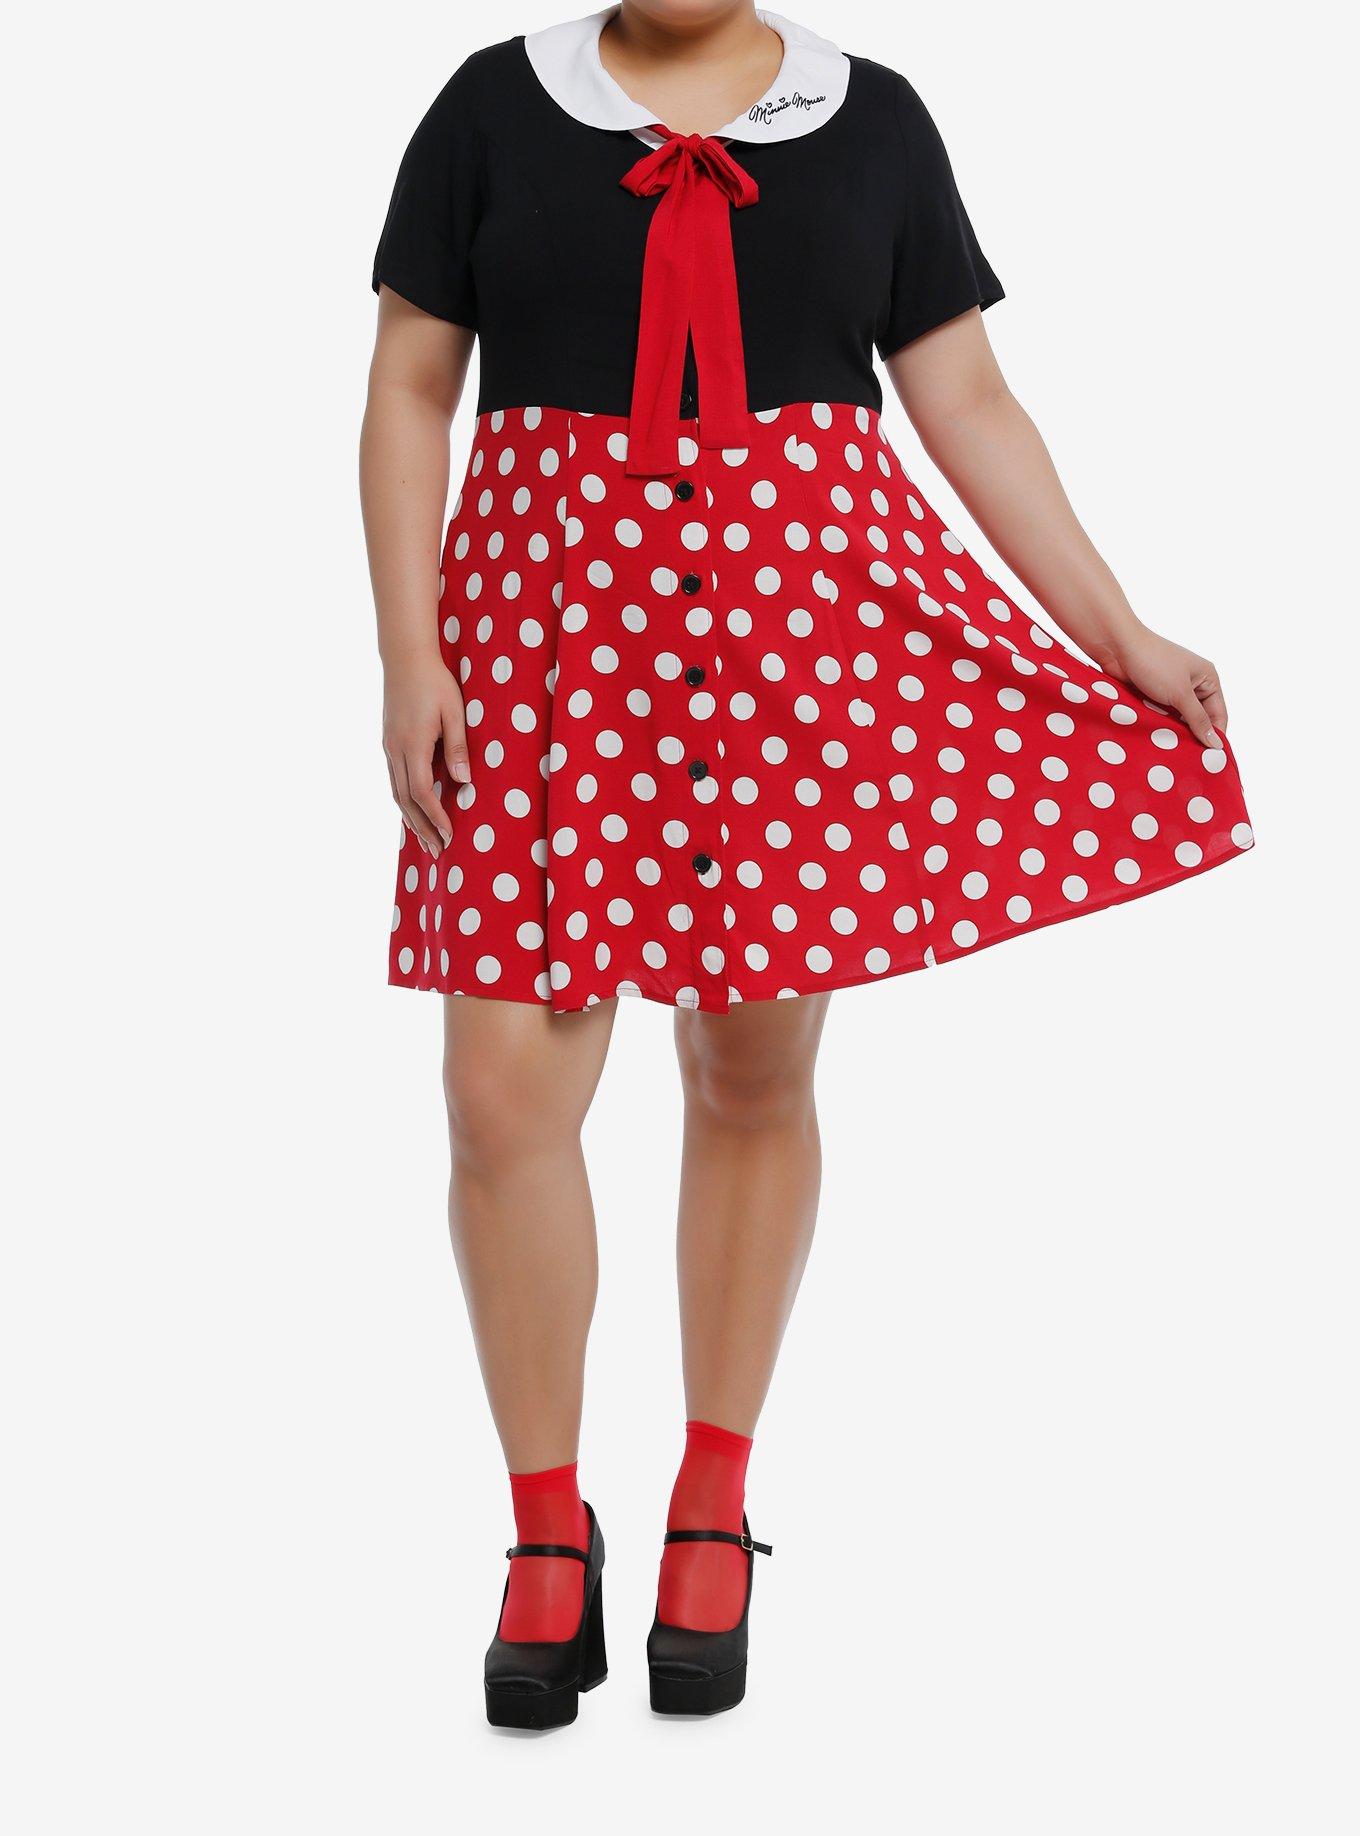 Disney Minnie Mouse Polka Dot Retro Dress Plus